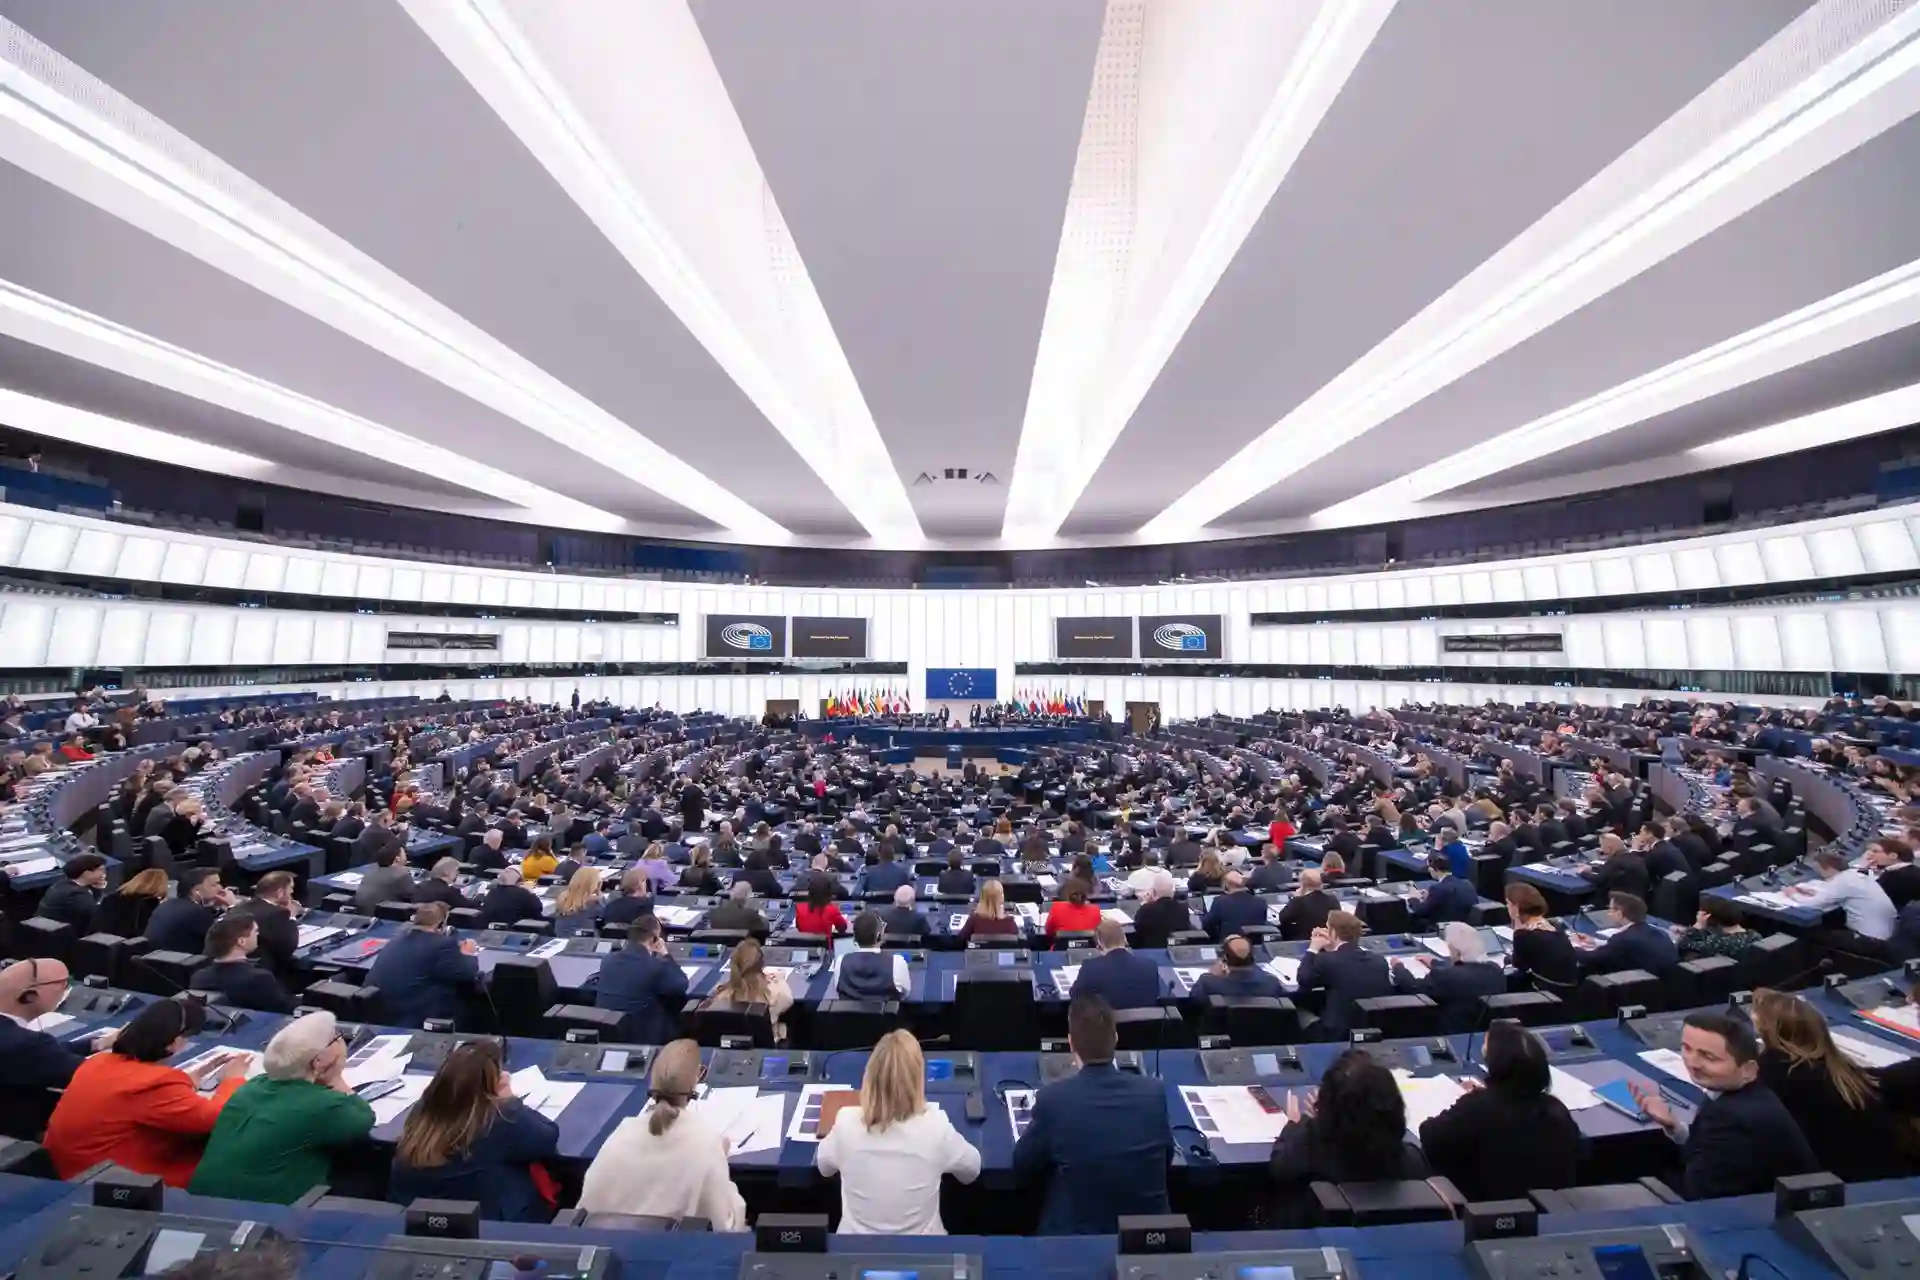 Sesión de votación en la sede del Parlamento Europeo en Estrasburgo / Foto: Parlamento Europeo - Denis Lomme